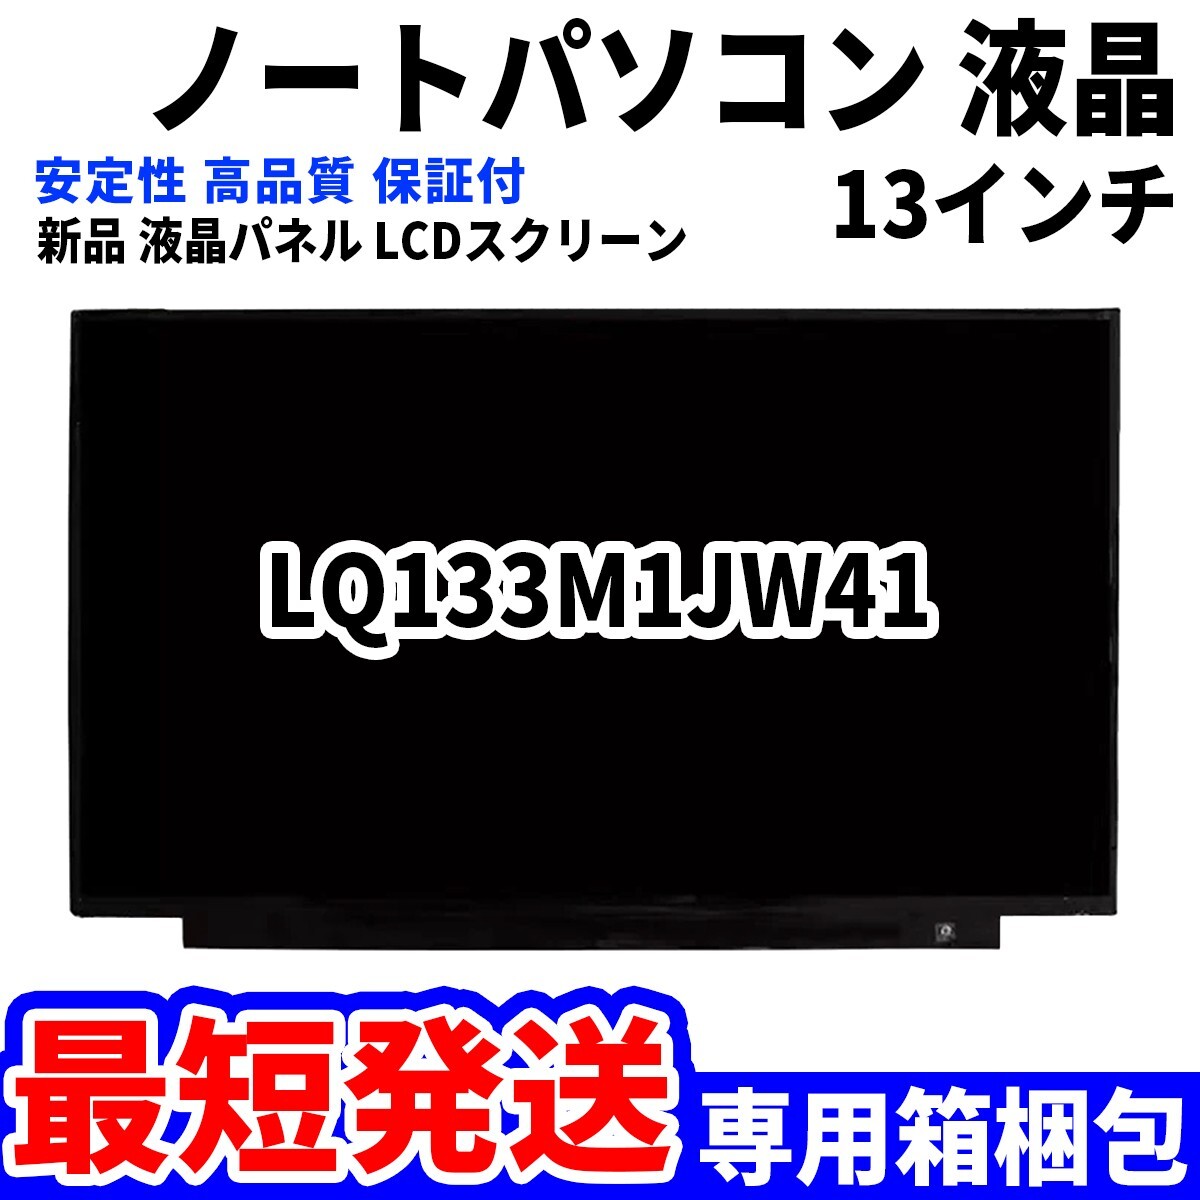 【最短発送】パソコン 液晶パネル LQ133M1JW41 13.3インチ 高品質 LCD ディスプレイ 交換 D-099_画像1